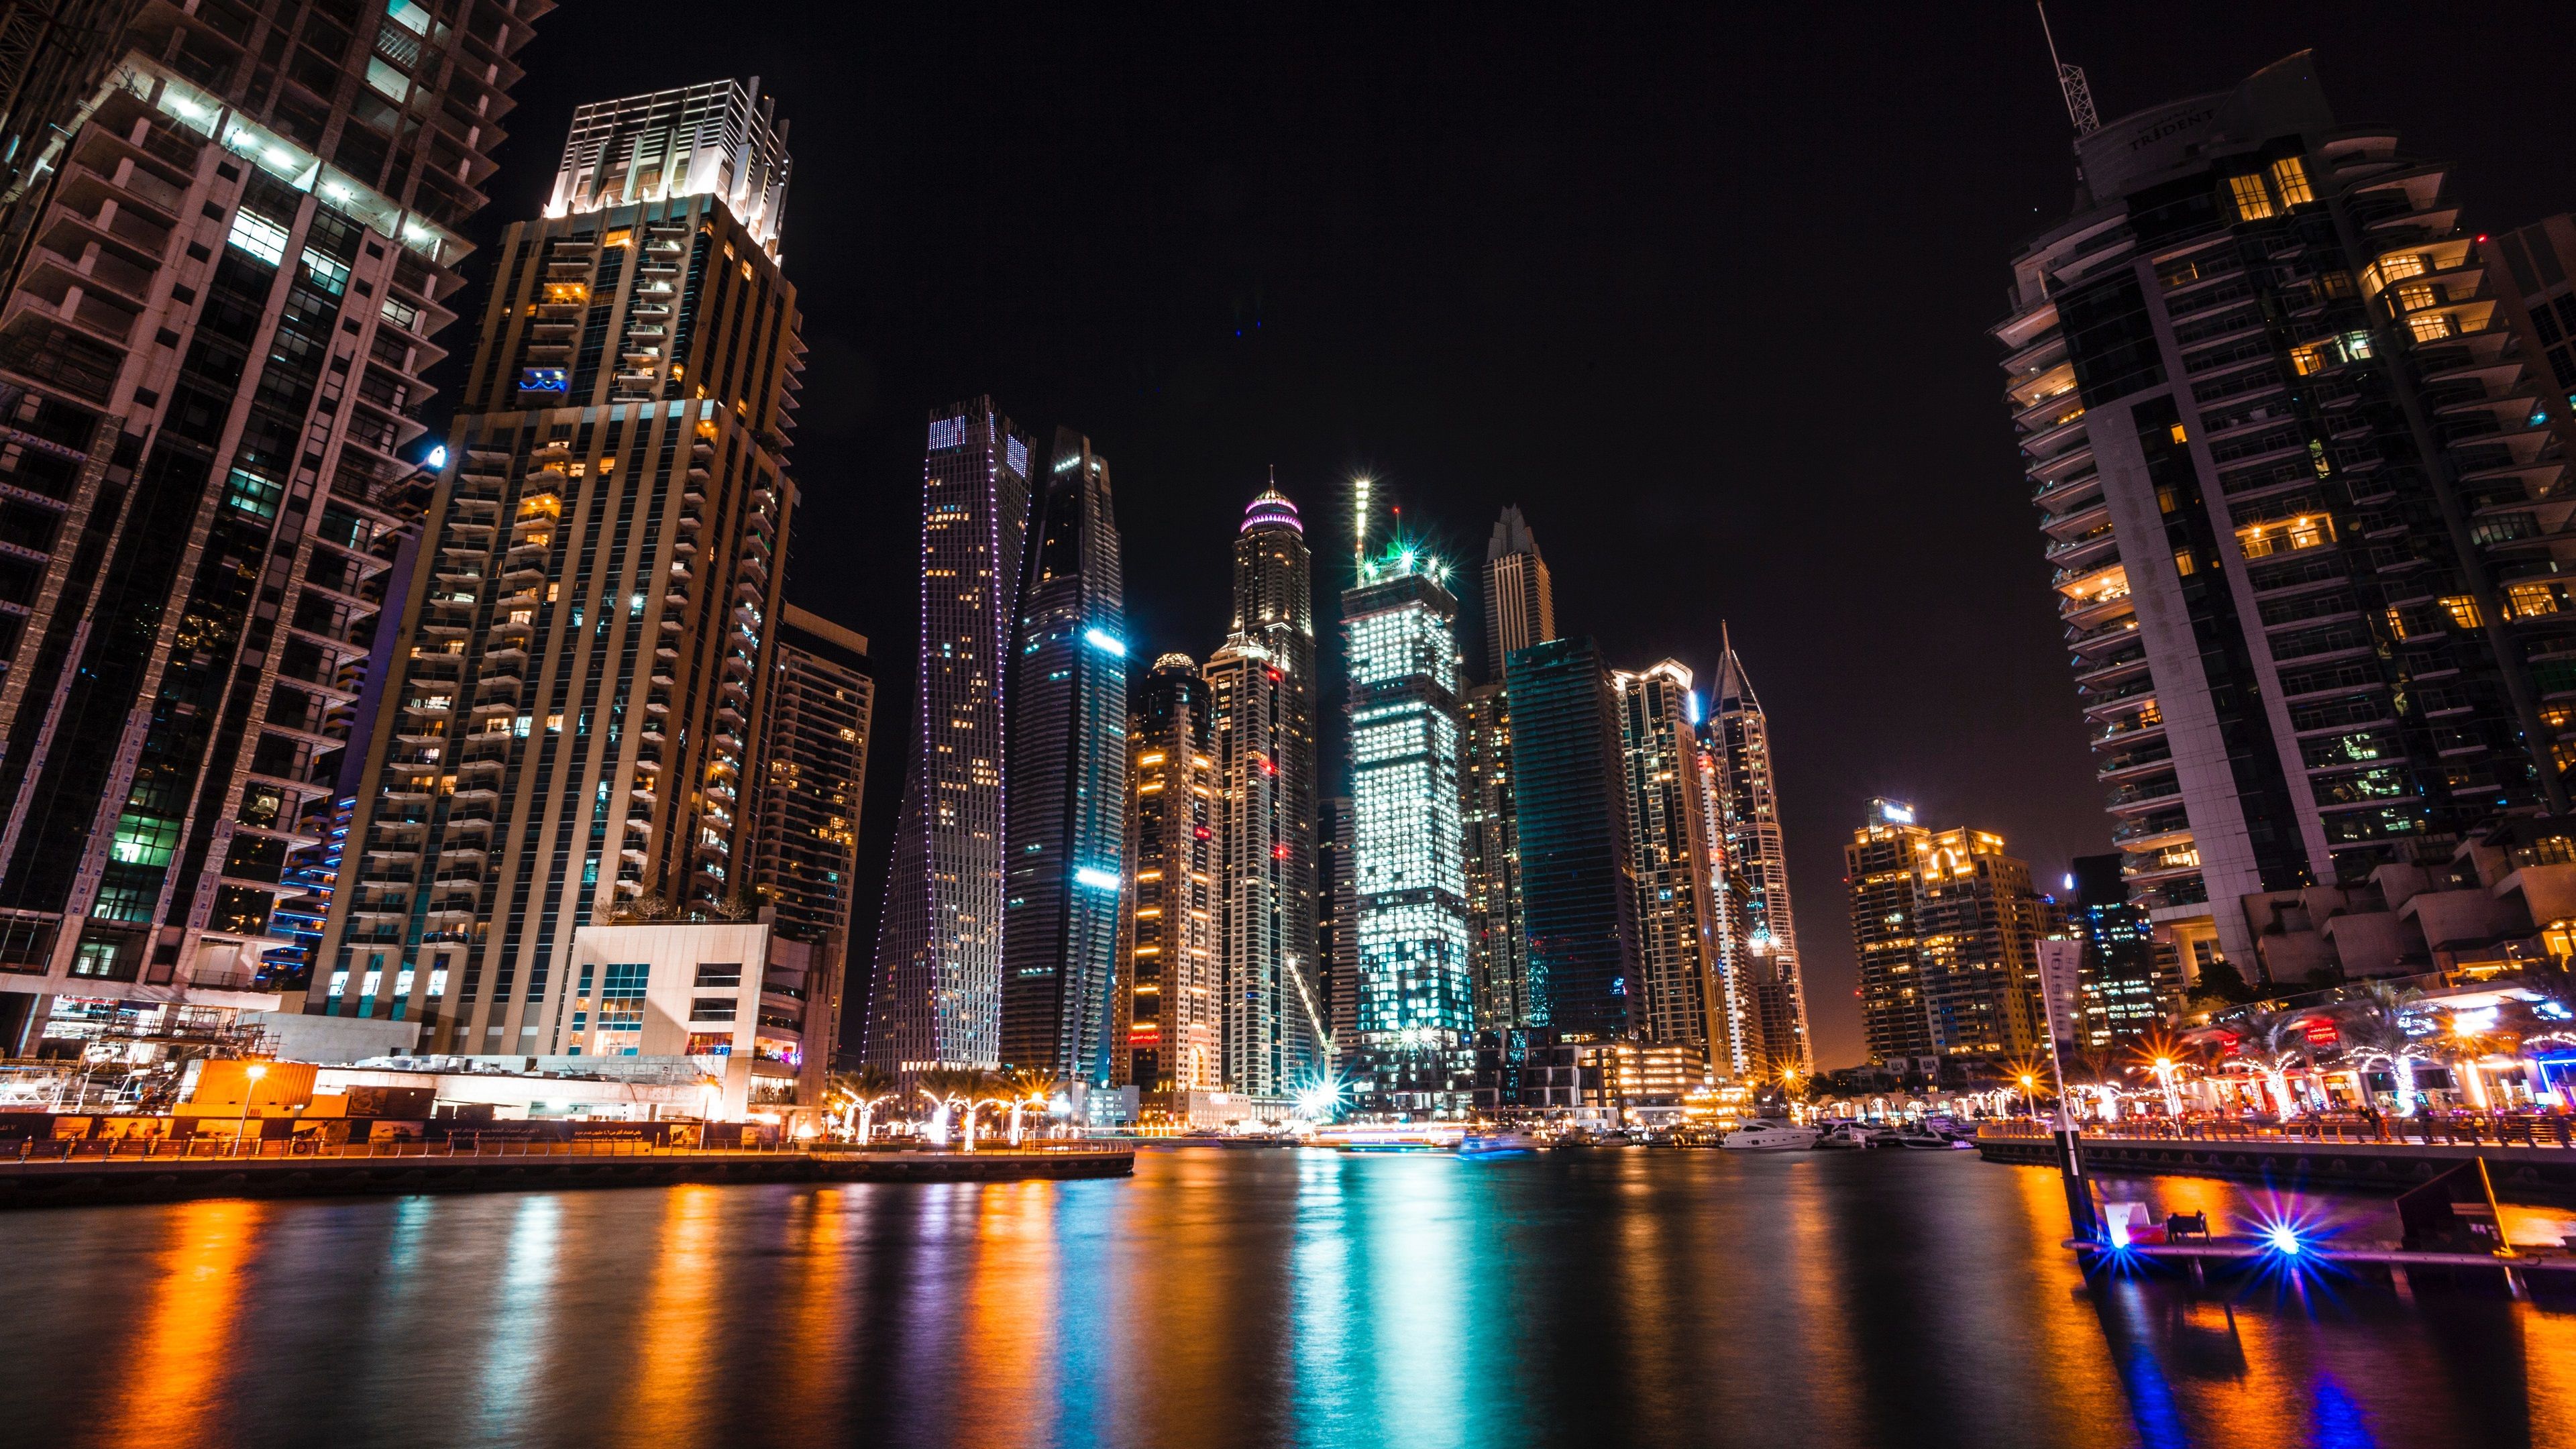 تصویر بسیار زیبای ساختمان های بلند دبی در شب جذاب